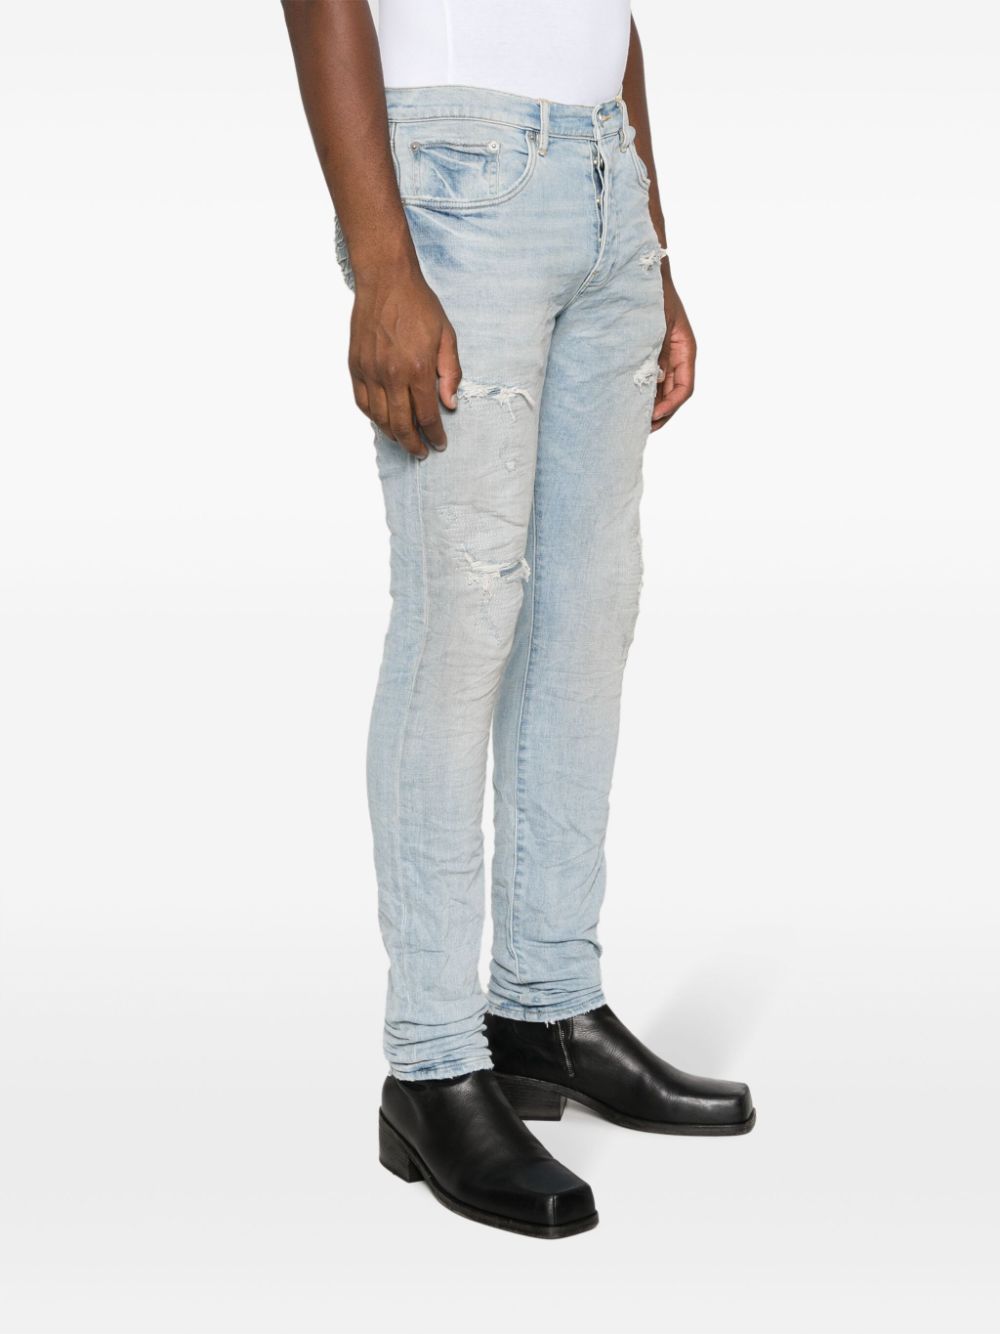 Jeans slim con effetto vissuto in blu - uomo PURPLE | PBP001LQDP